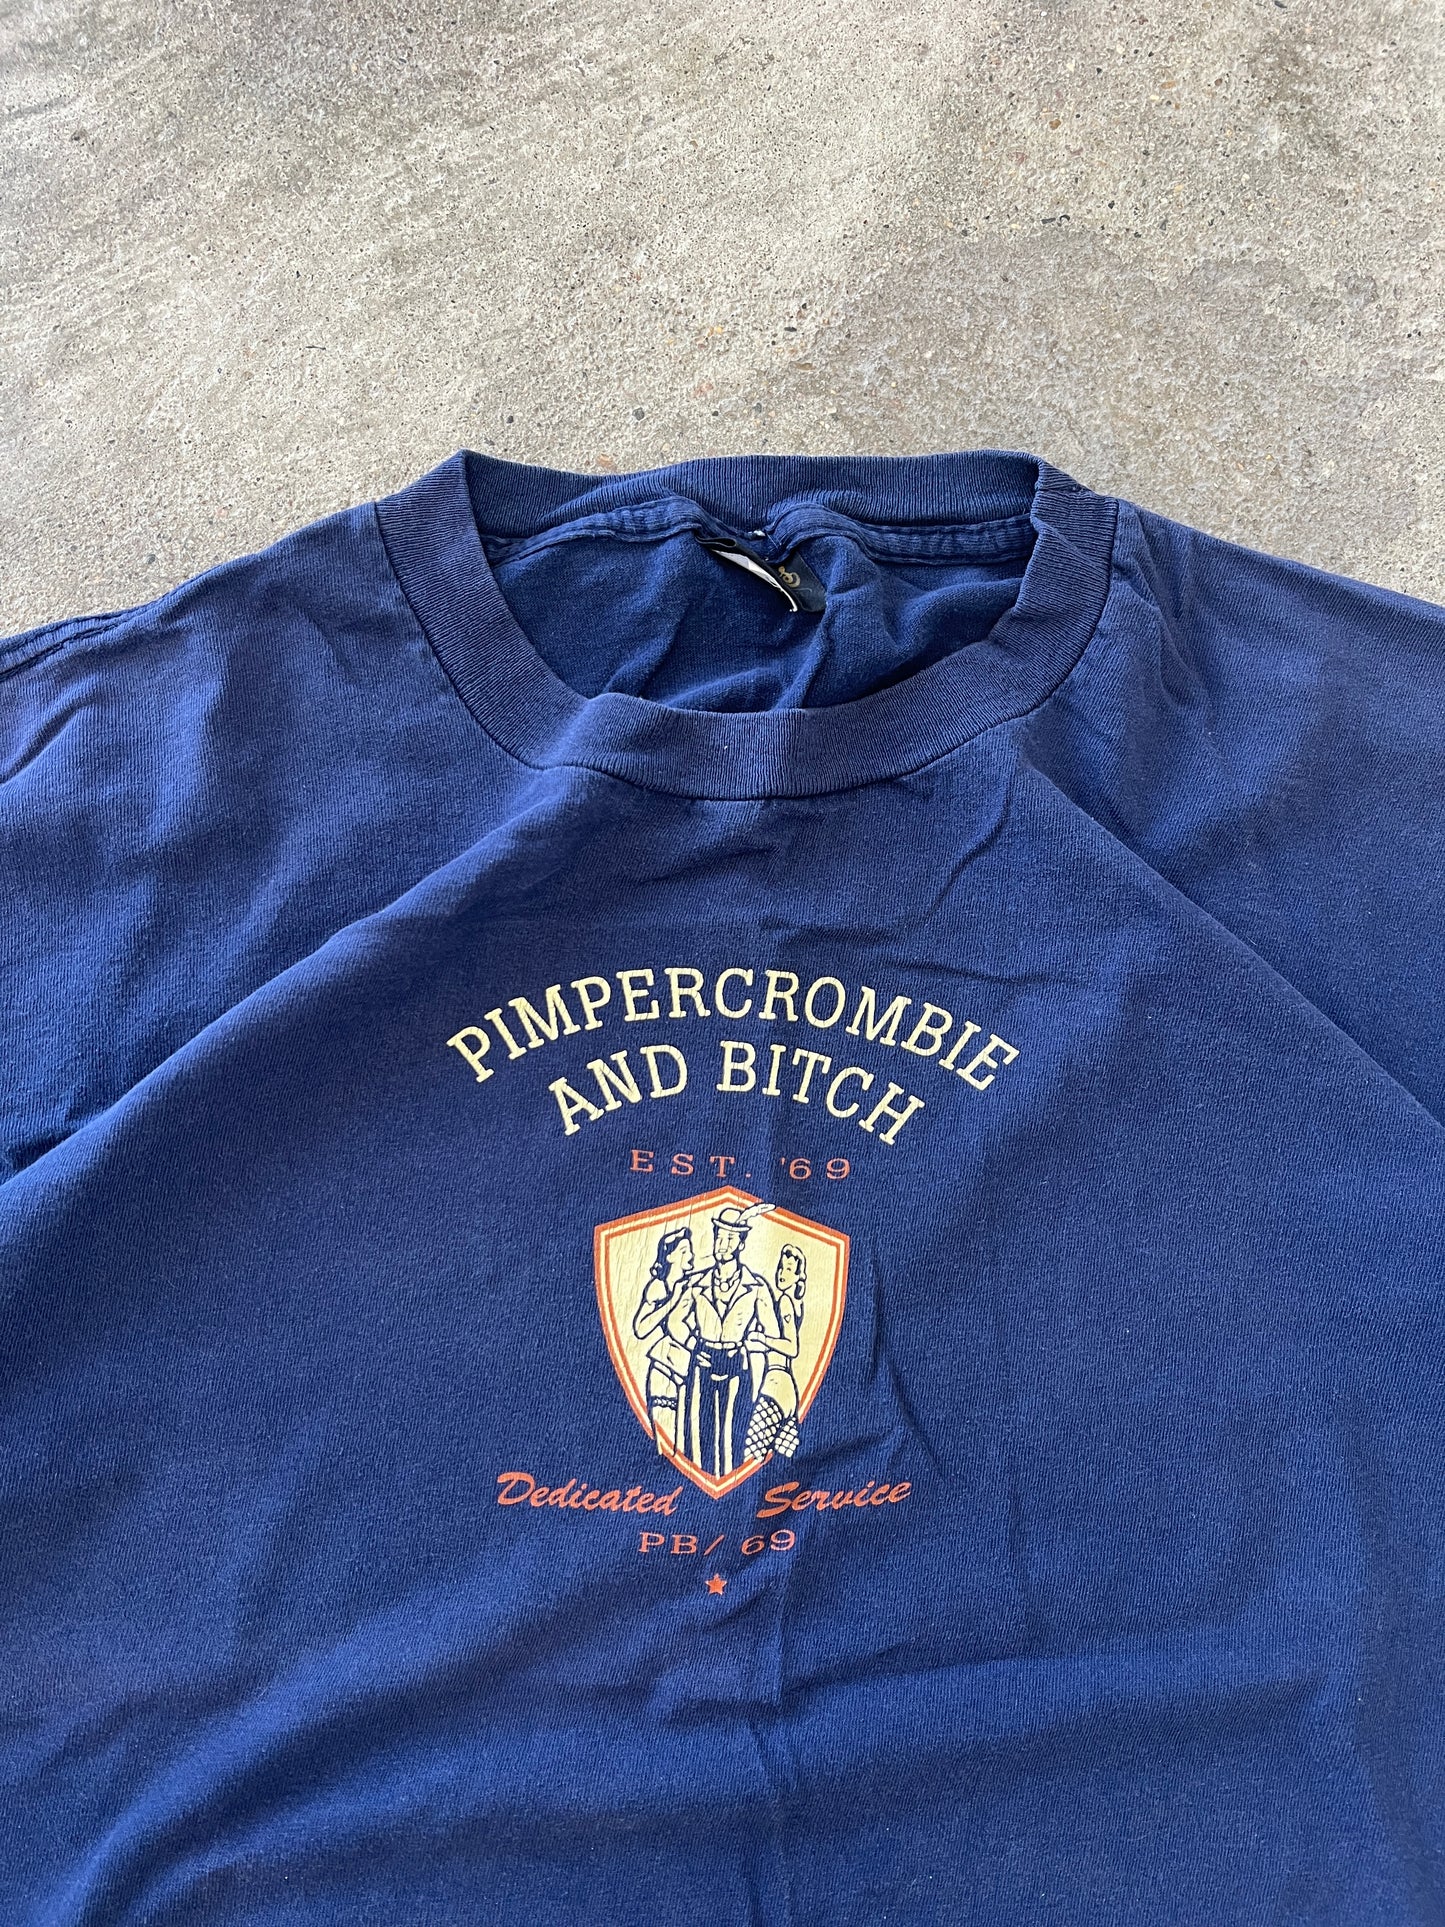 Vintage Pimpercrombie Shirt - XL